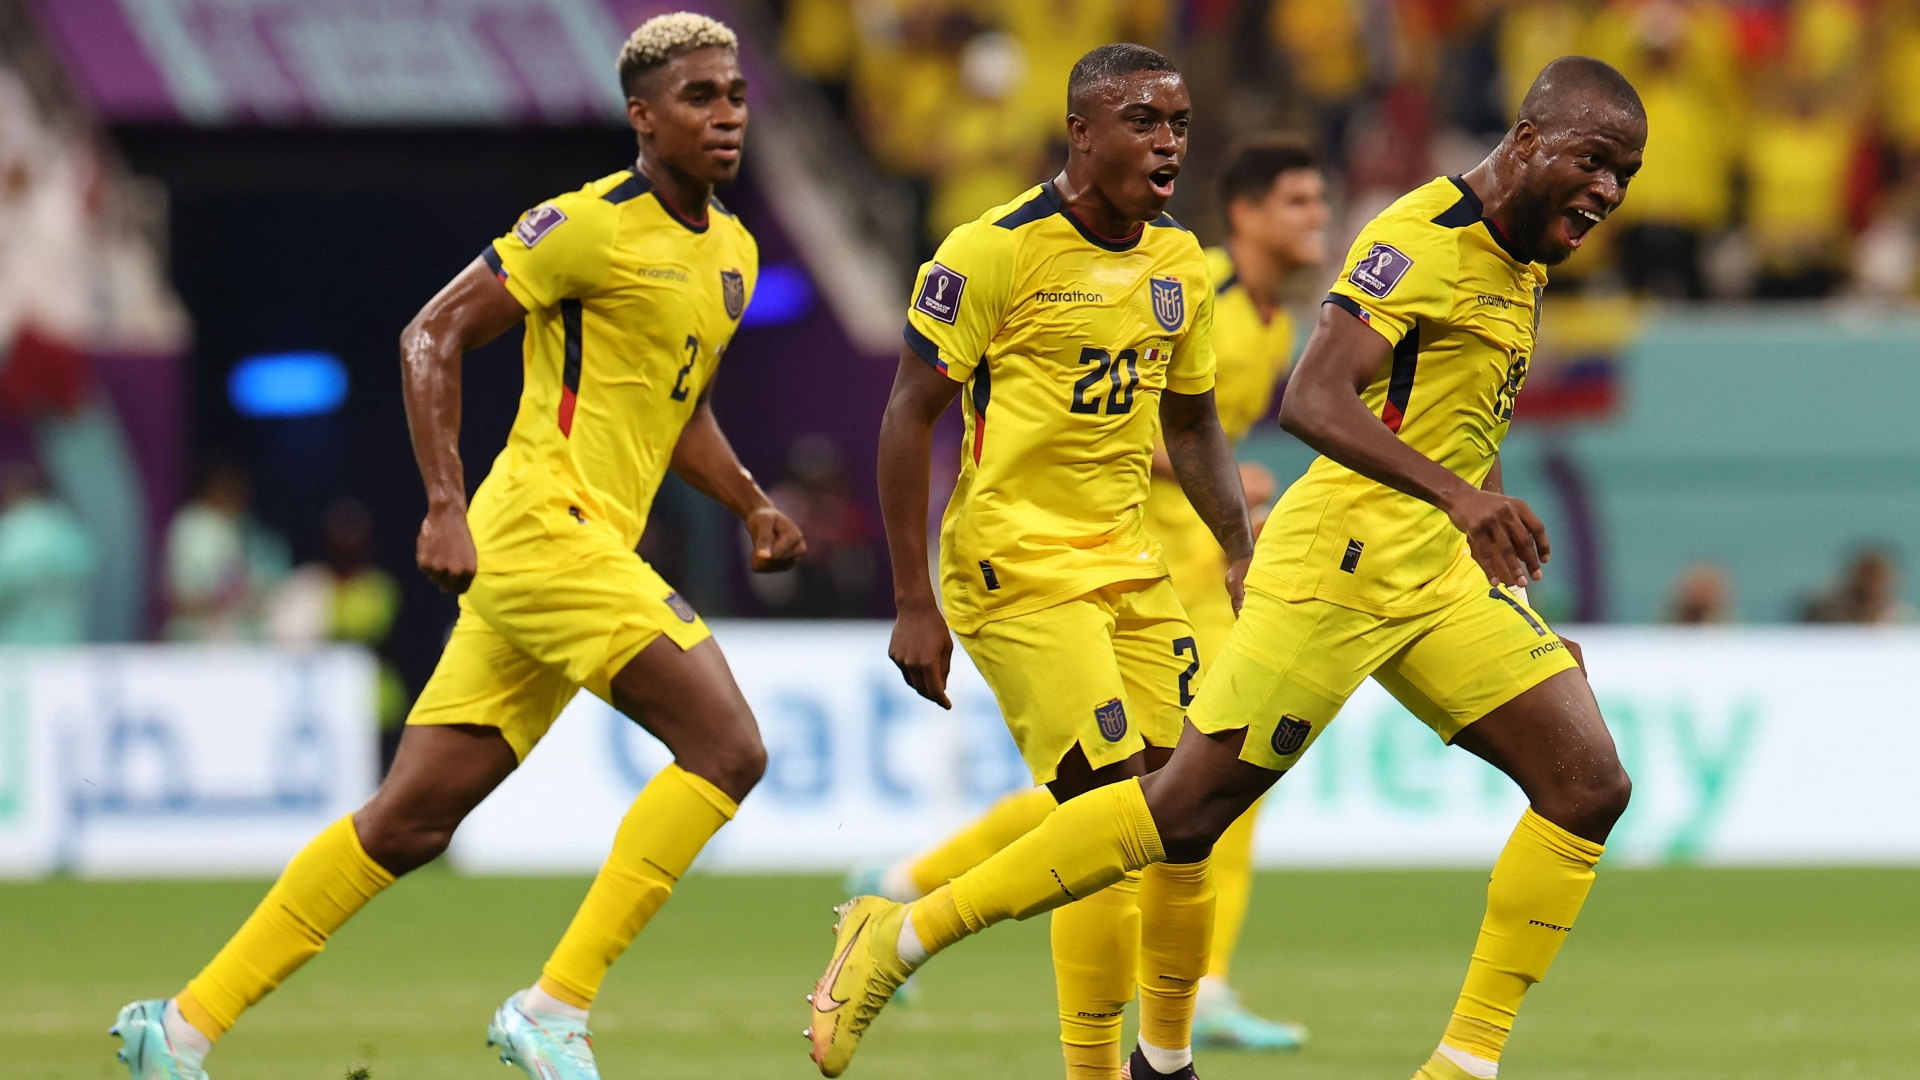 Дубль Валенсии принес Эквадору победу над Катаром в матче открытия ЧМ-2022 по футболу